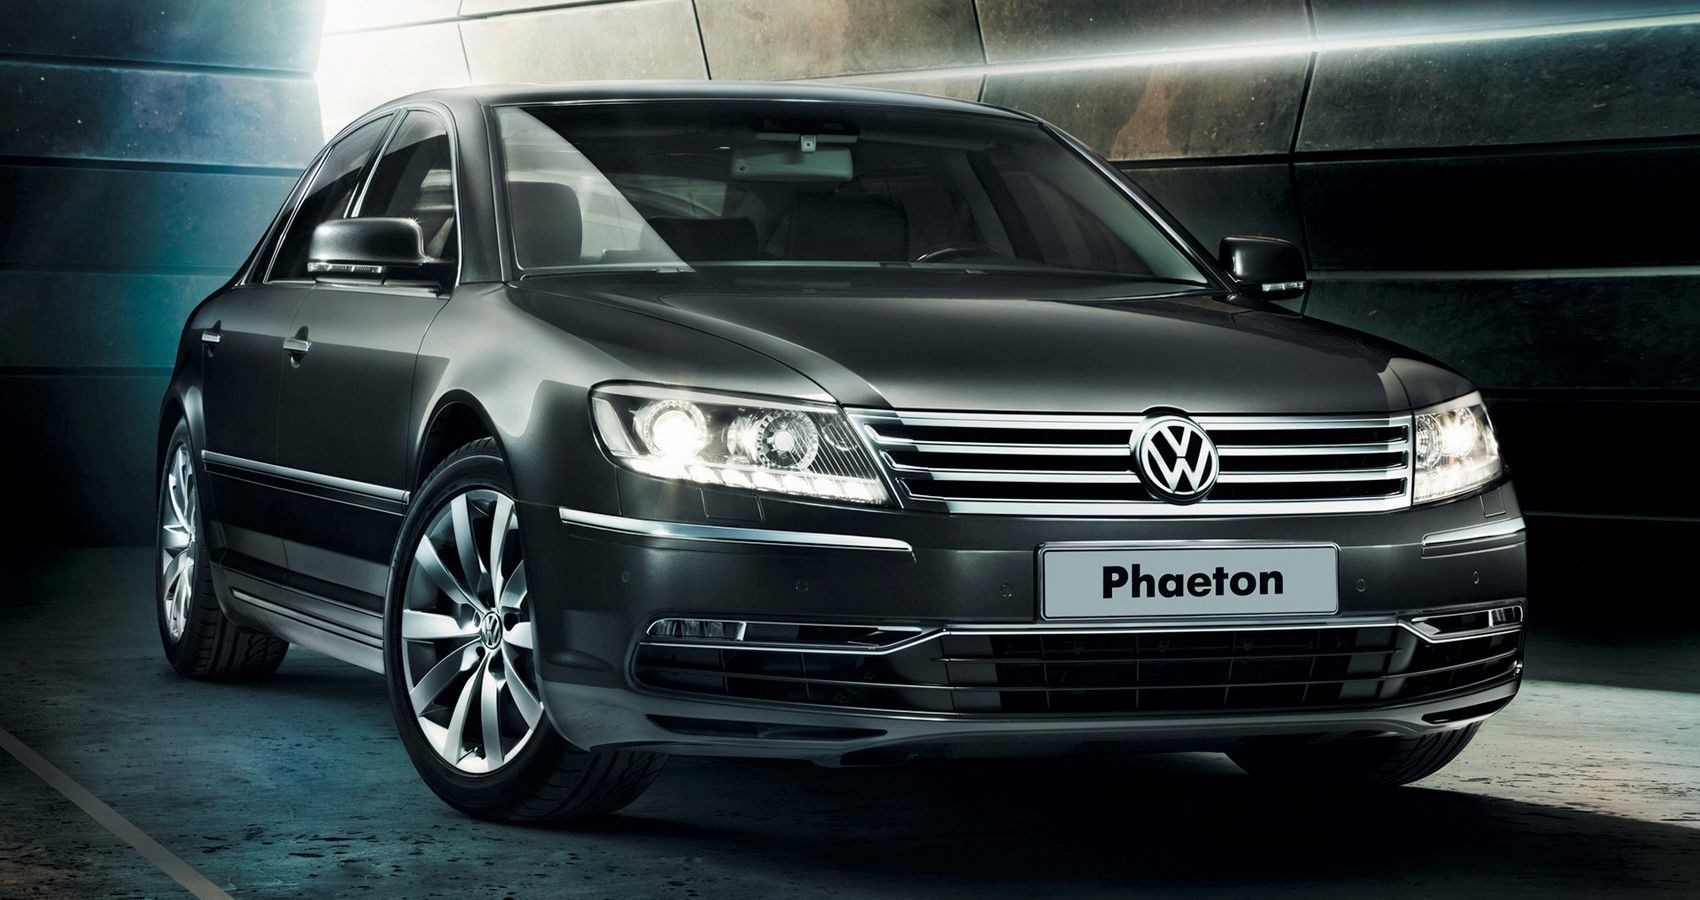 Volkswagen Phaeton - Front